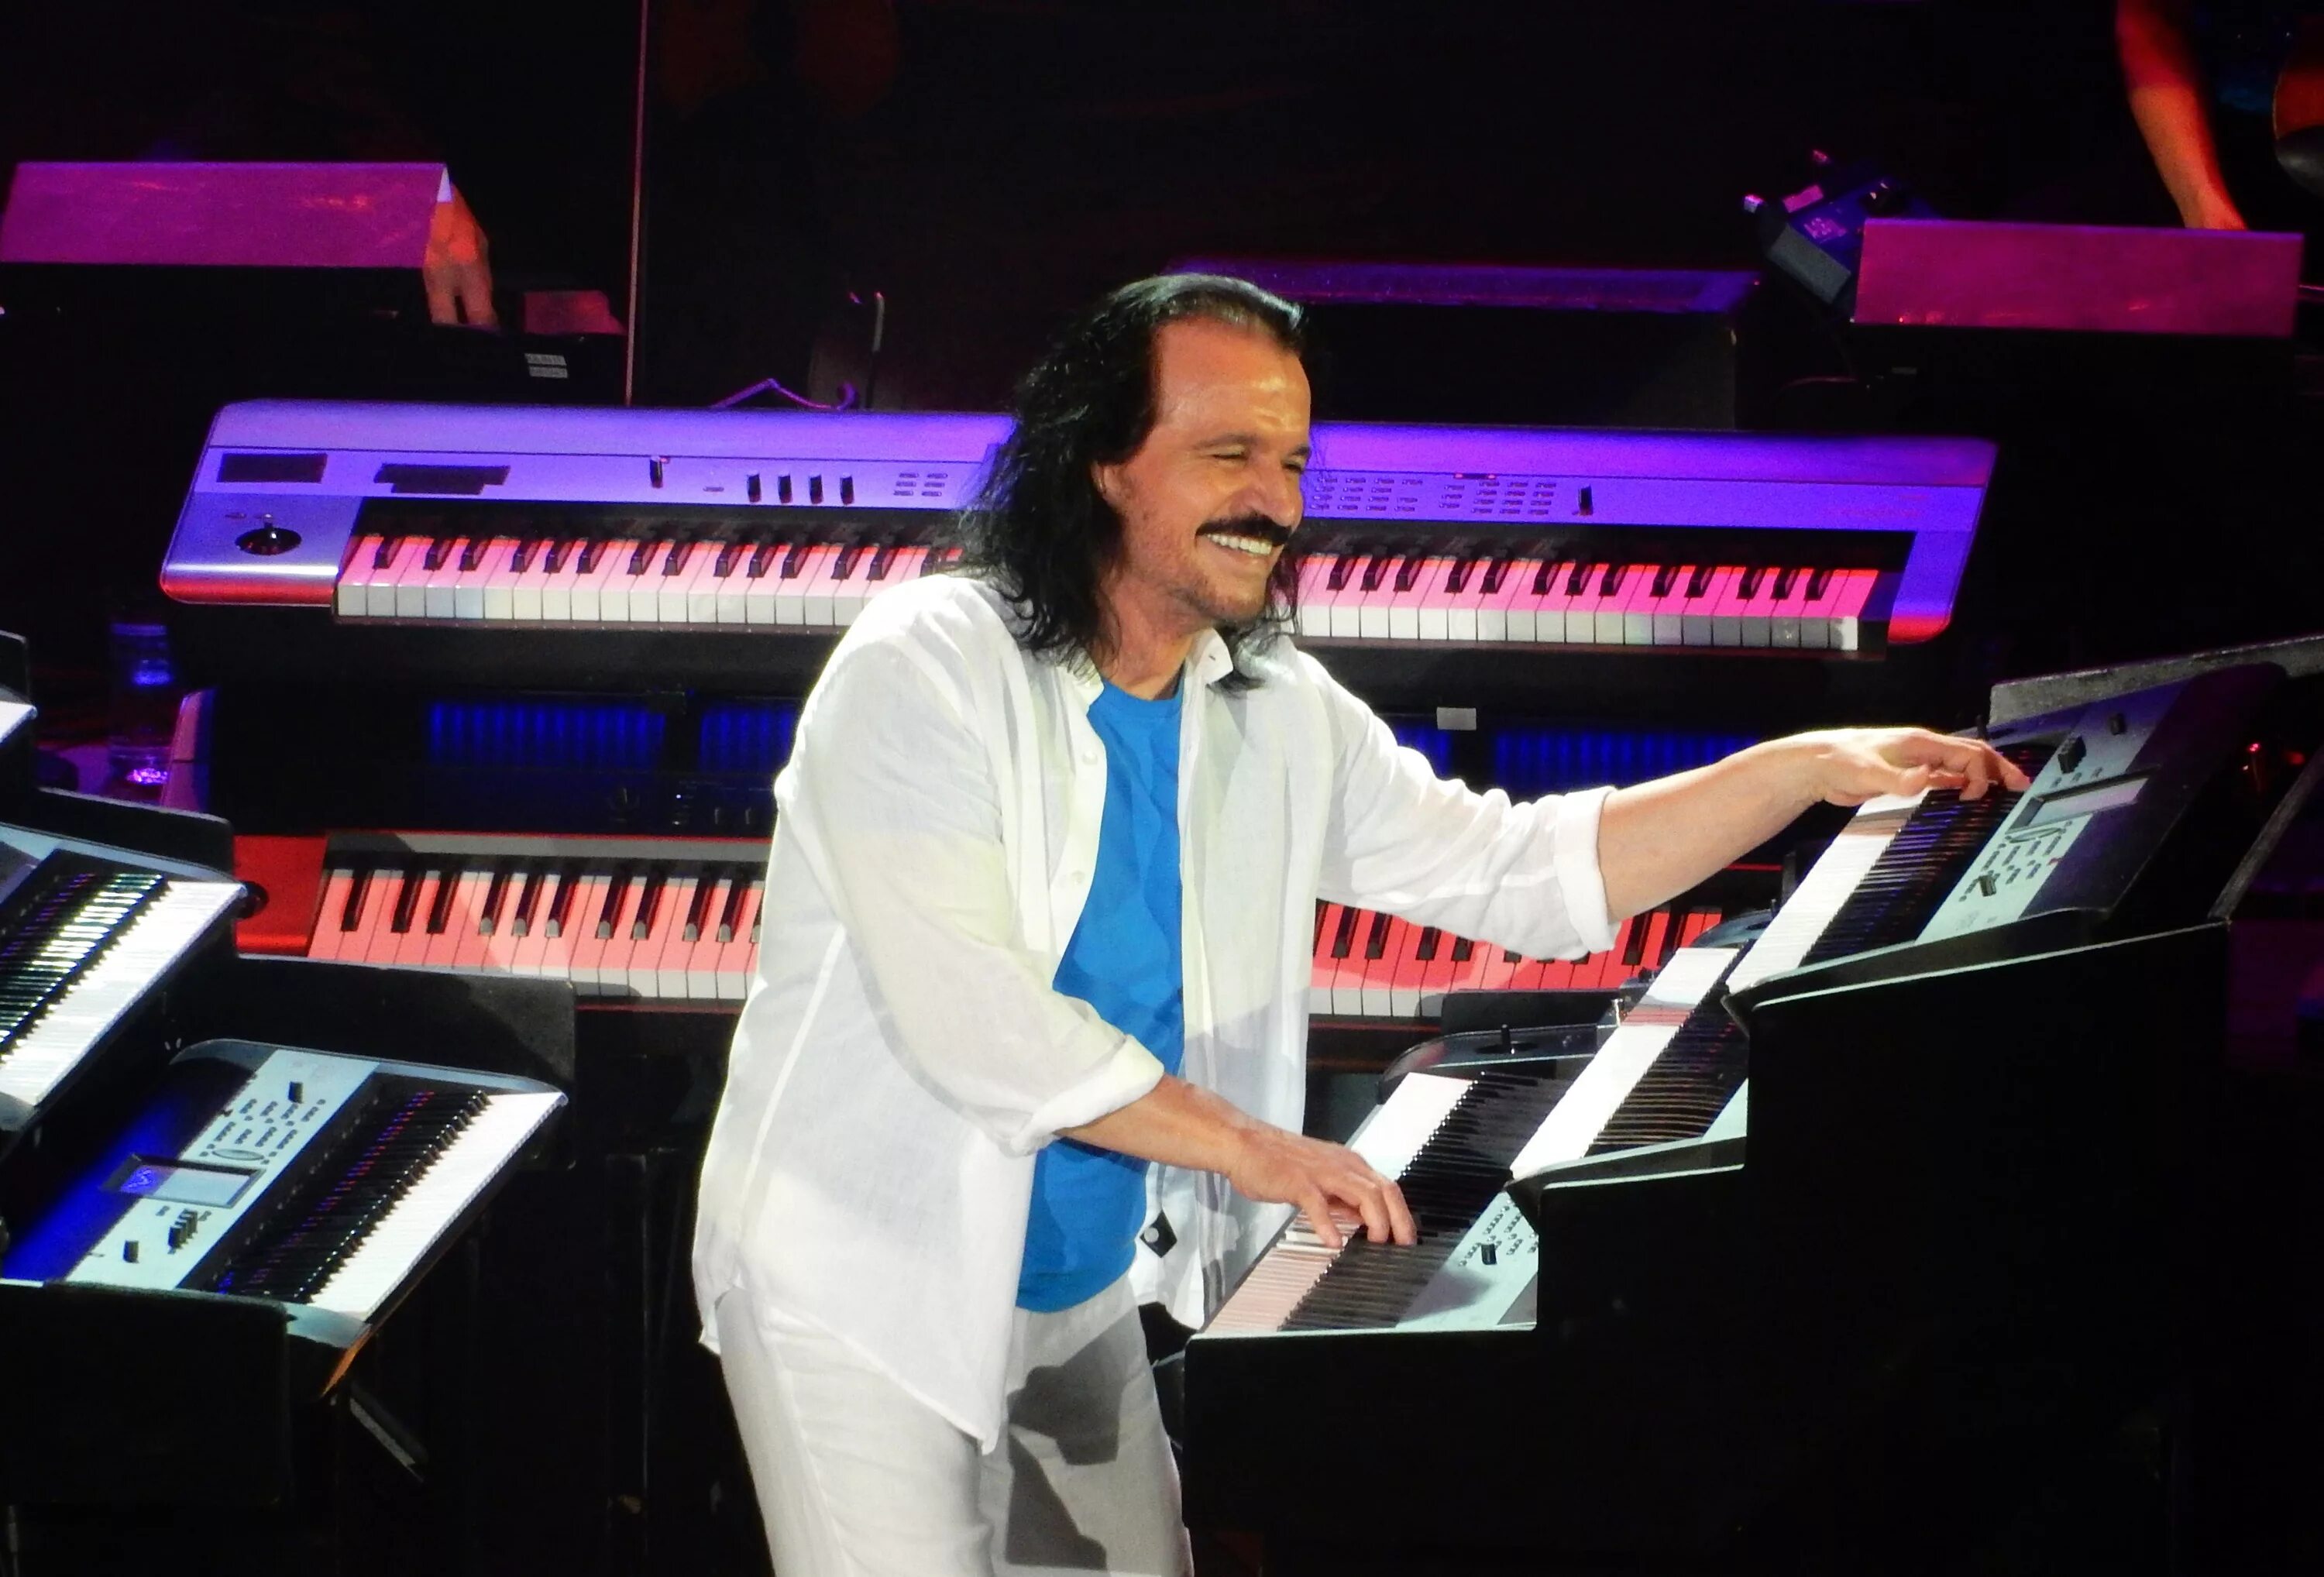 Янни хрисомаллис концерт. Янни греческий композитор. Янни хрисомаллис 2021. Yanni Live! The Concert event яни. Концерт янни хрисомаллис 2021.